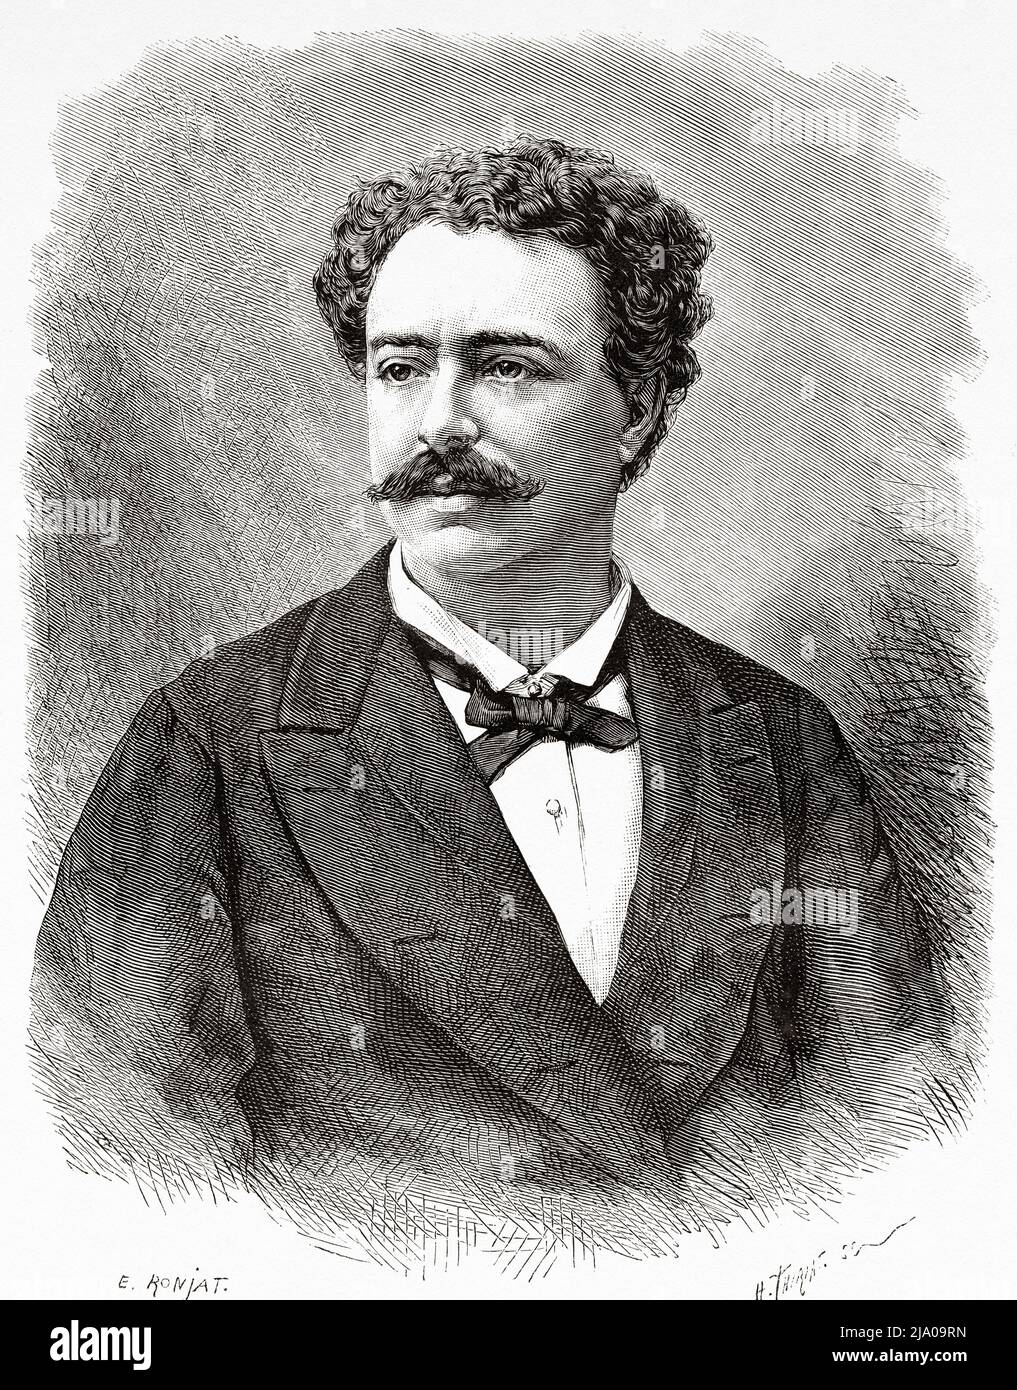 Portrait d'Edmondo de Amicis (1846-1908) romancier, professeur, journaliste, poète et écrivain italien Banque D'Images